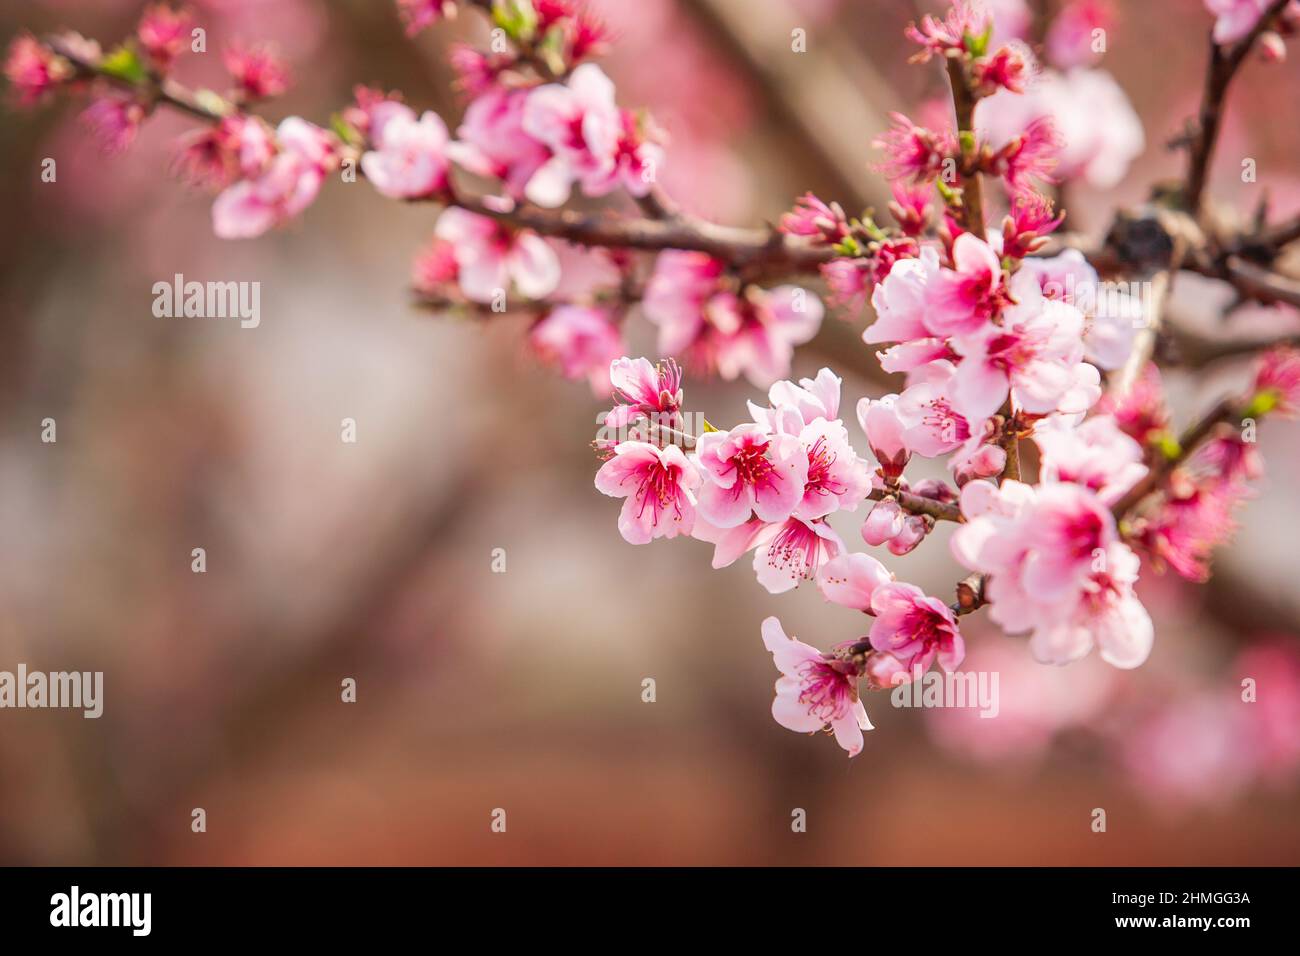 Fleur de la cerise de Peach dans les branches des arbres, fleurs roses en pleine floraison. Fleur de printemps. Dongchuan, Chine. Banque D'Images